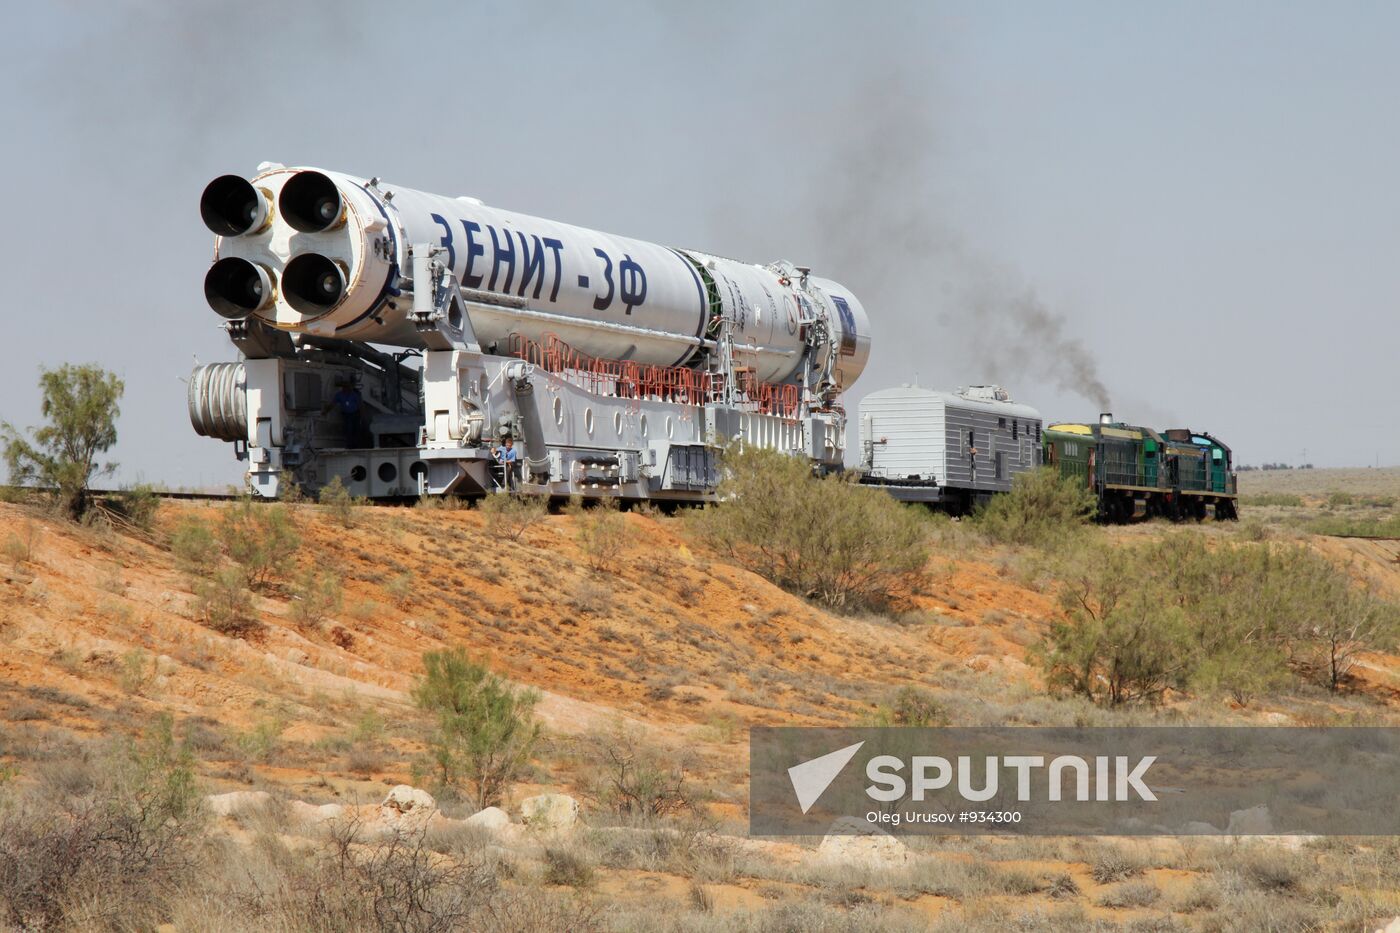 Transferring Zenit-3M rocket